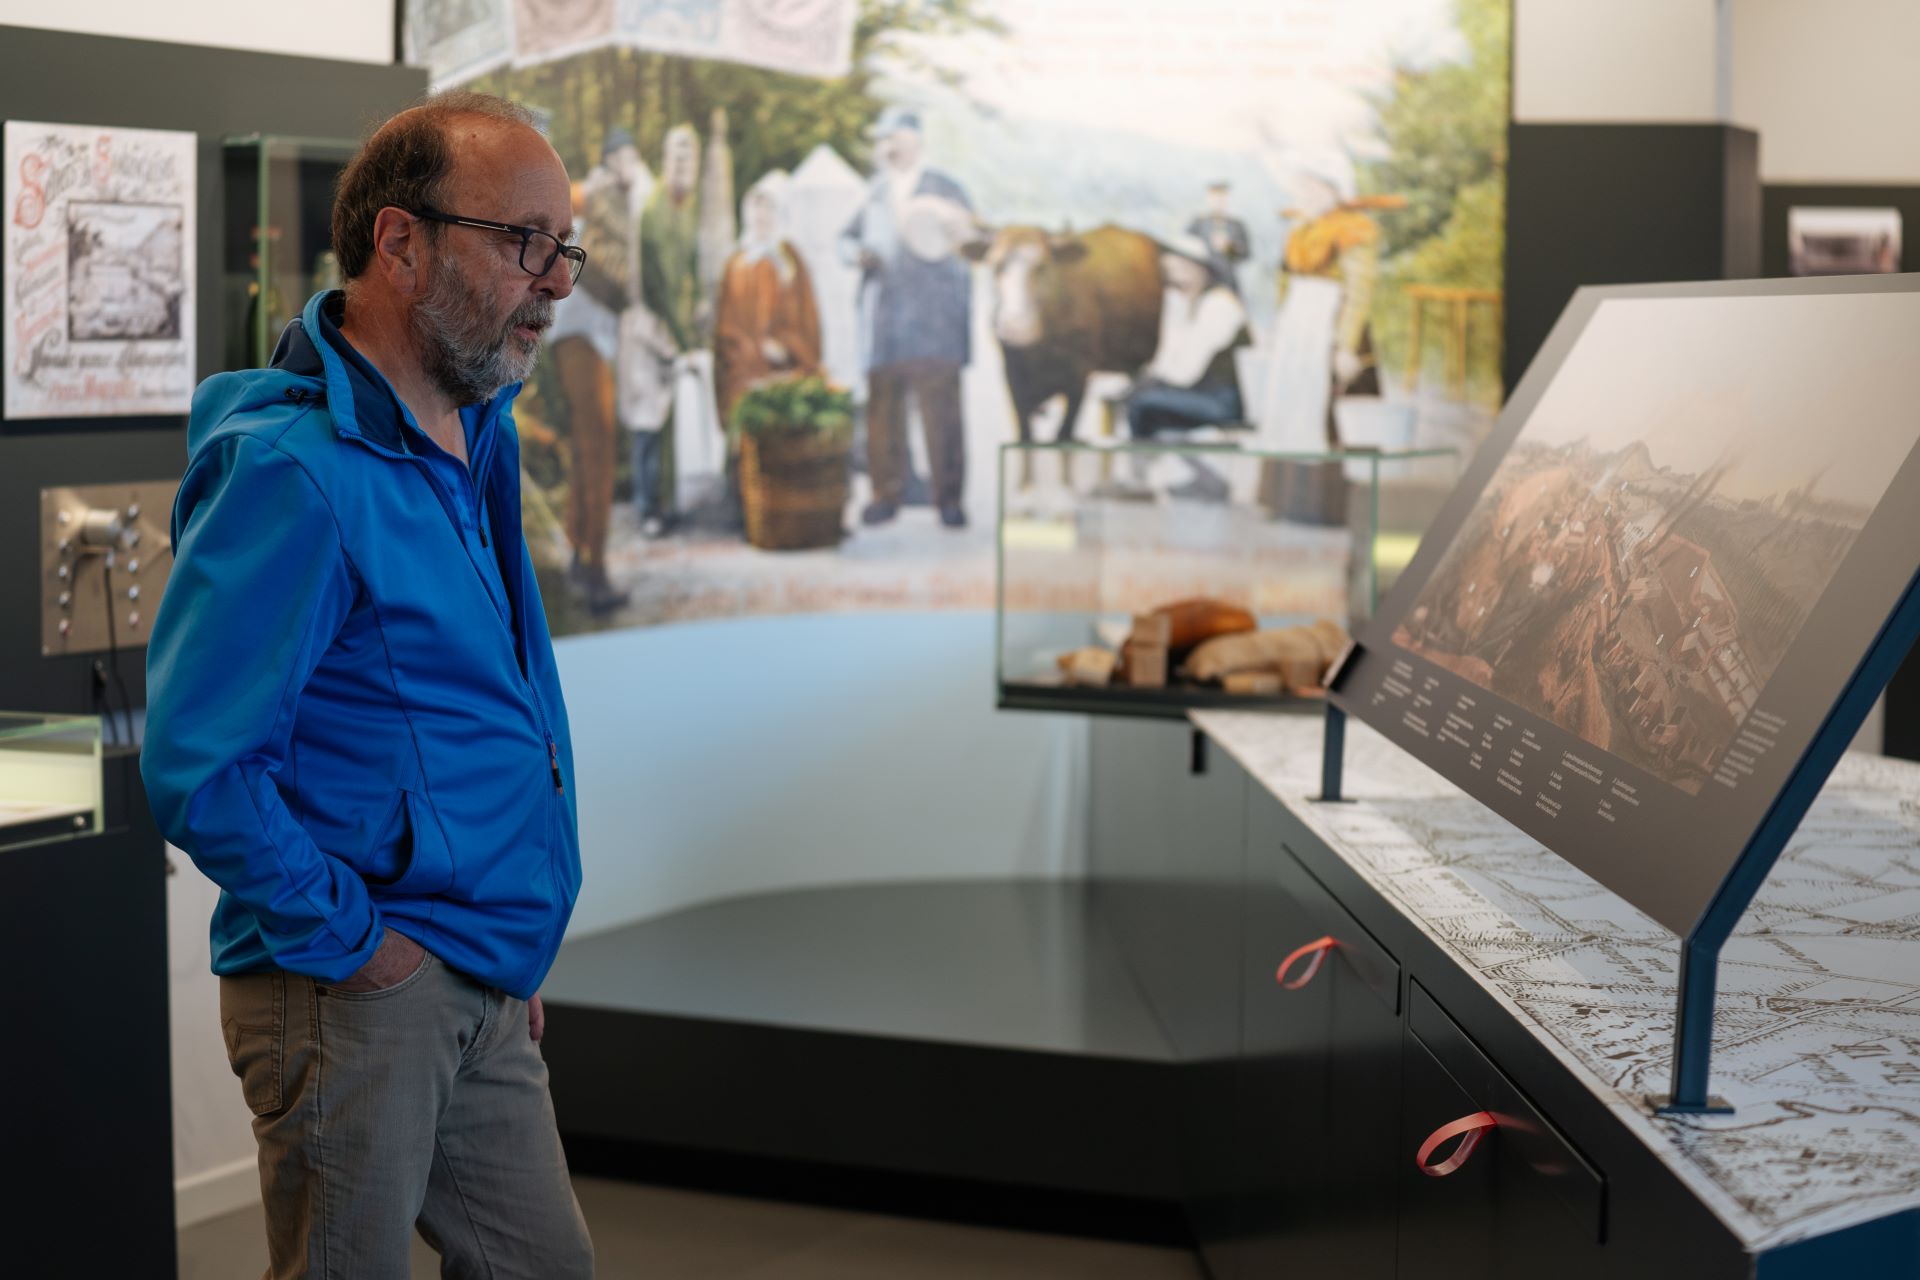 Un homme regarde une exposition dans un musée. Il est debout, vêtu d'une veste bleue et d'un pantalon gris, les mains dans les poches.